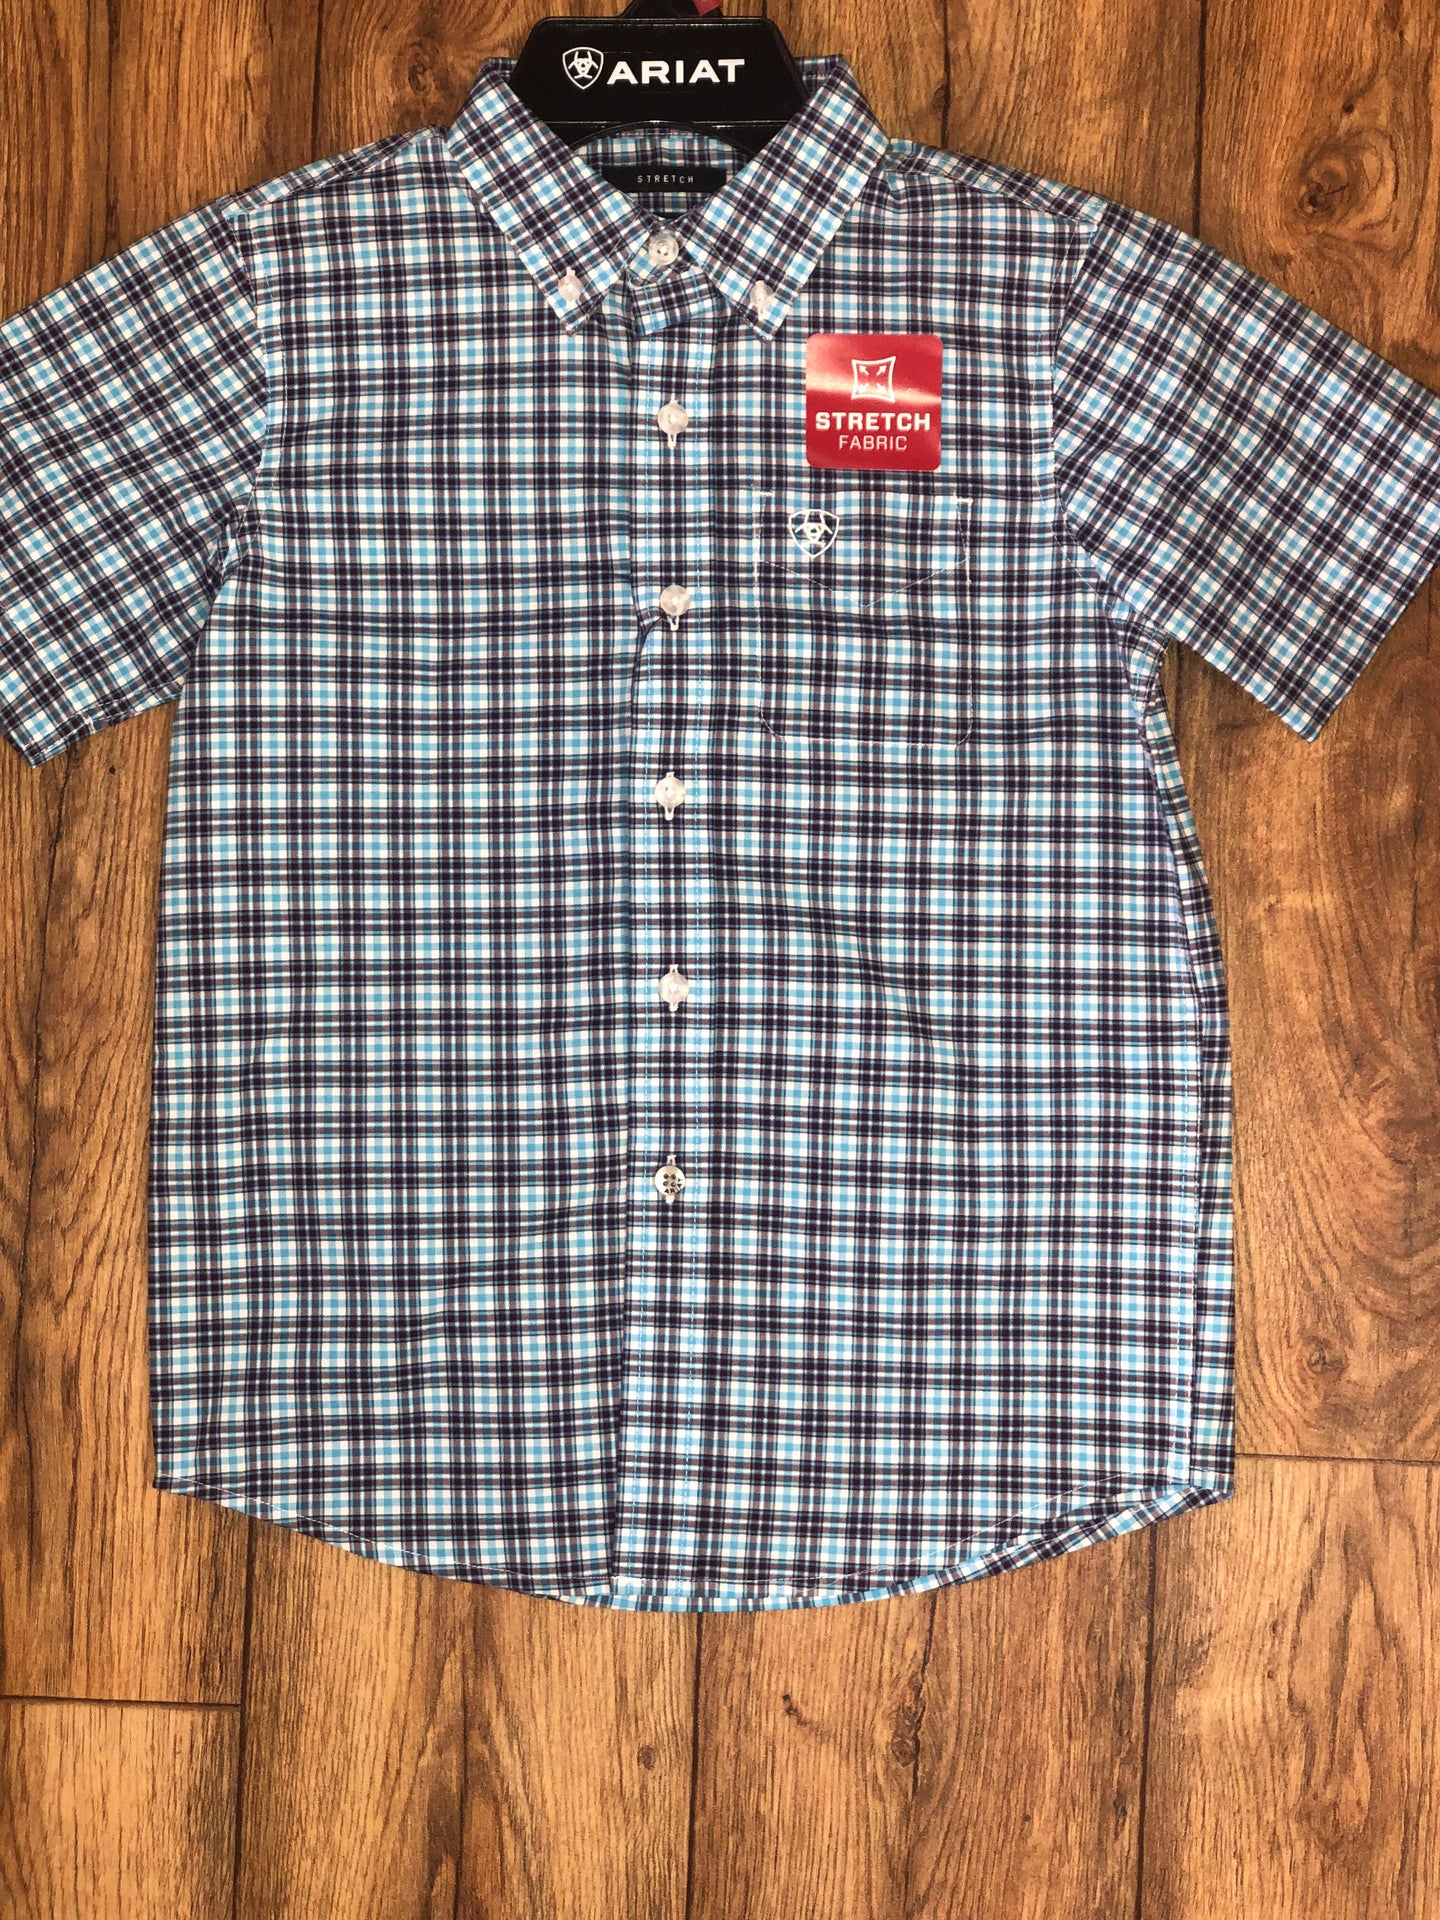 Ariat Boy’s Short Sleeve Shirt (6451)